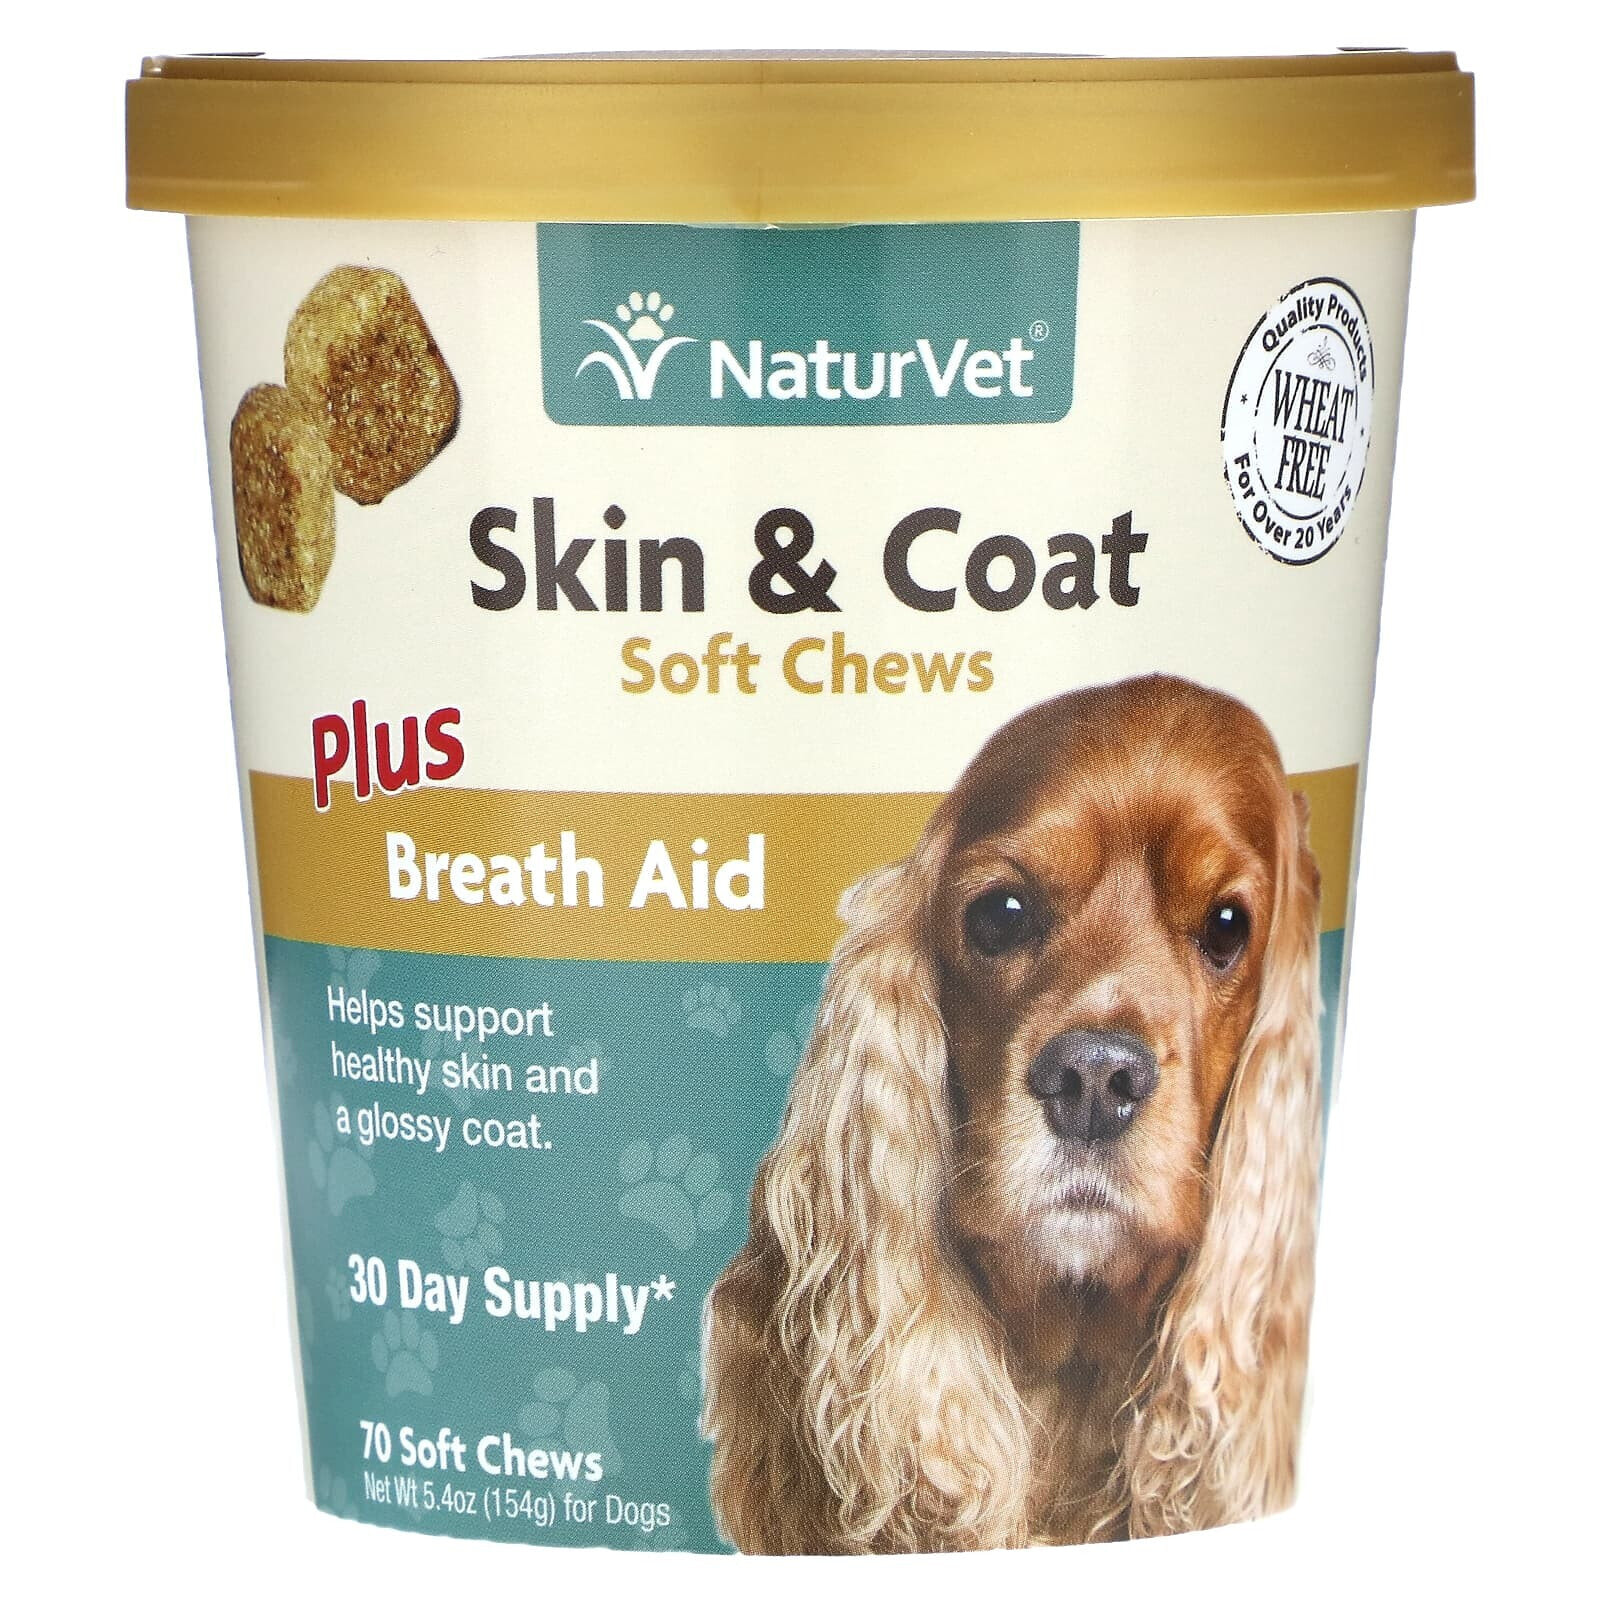 Skin & Coat Soft Chews, Plus Breath Aid, For Dogs, 70 Soft Chews, 5.4 oz (154 g)